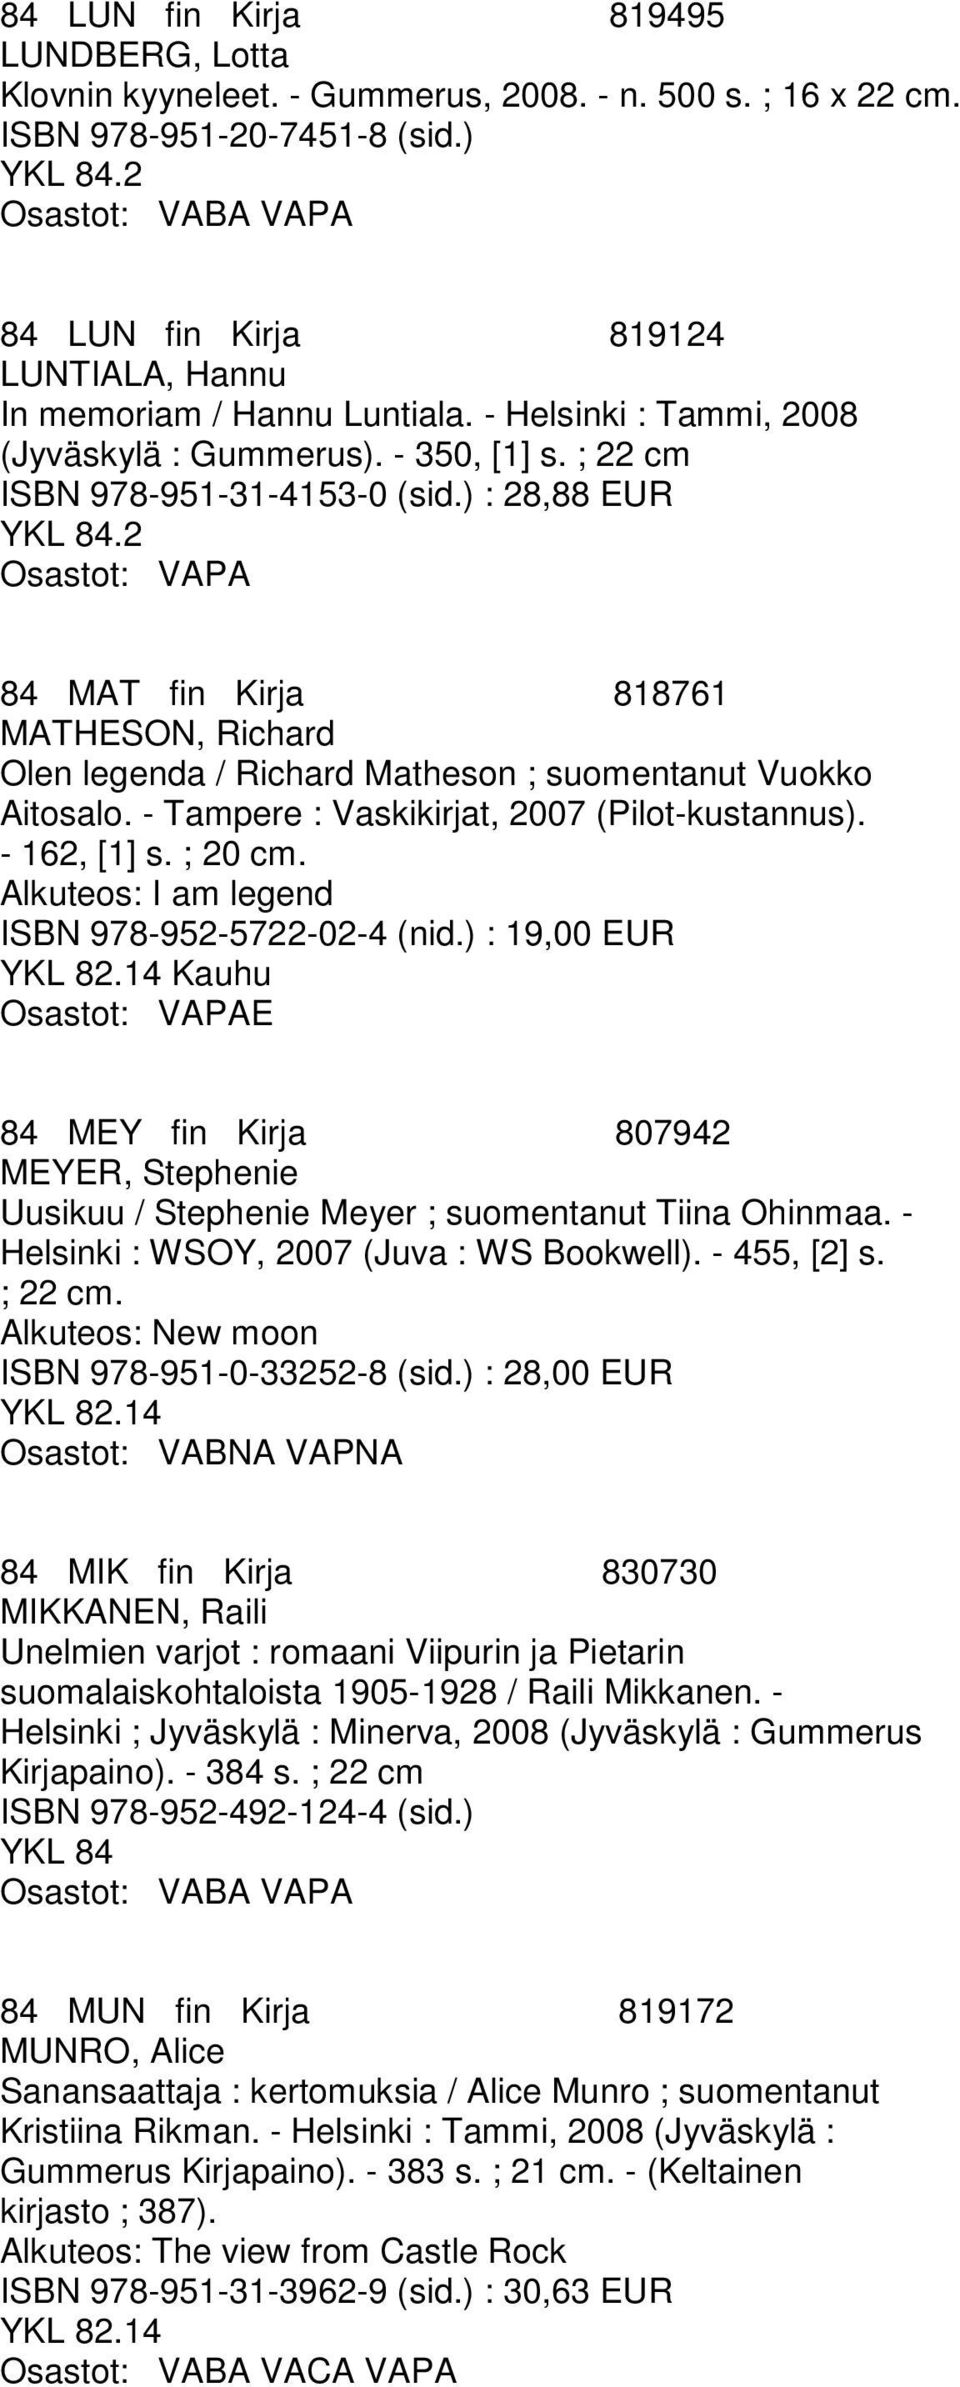 ) : 28,88 EUR 84 MAT fin Kirja 818761 MATHESON, Richard Olen legenda / Richard Matheson ; suomentanut Vuokko Aitosalo. - Tampere : Vaskikirjat, 2007 (Pilot-kustannus). - 162, [1] s. ; 20 cm.